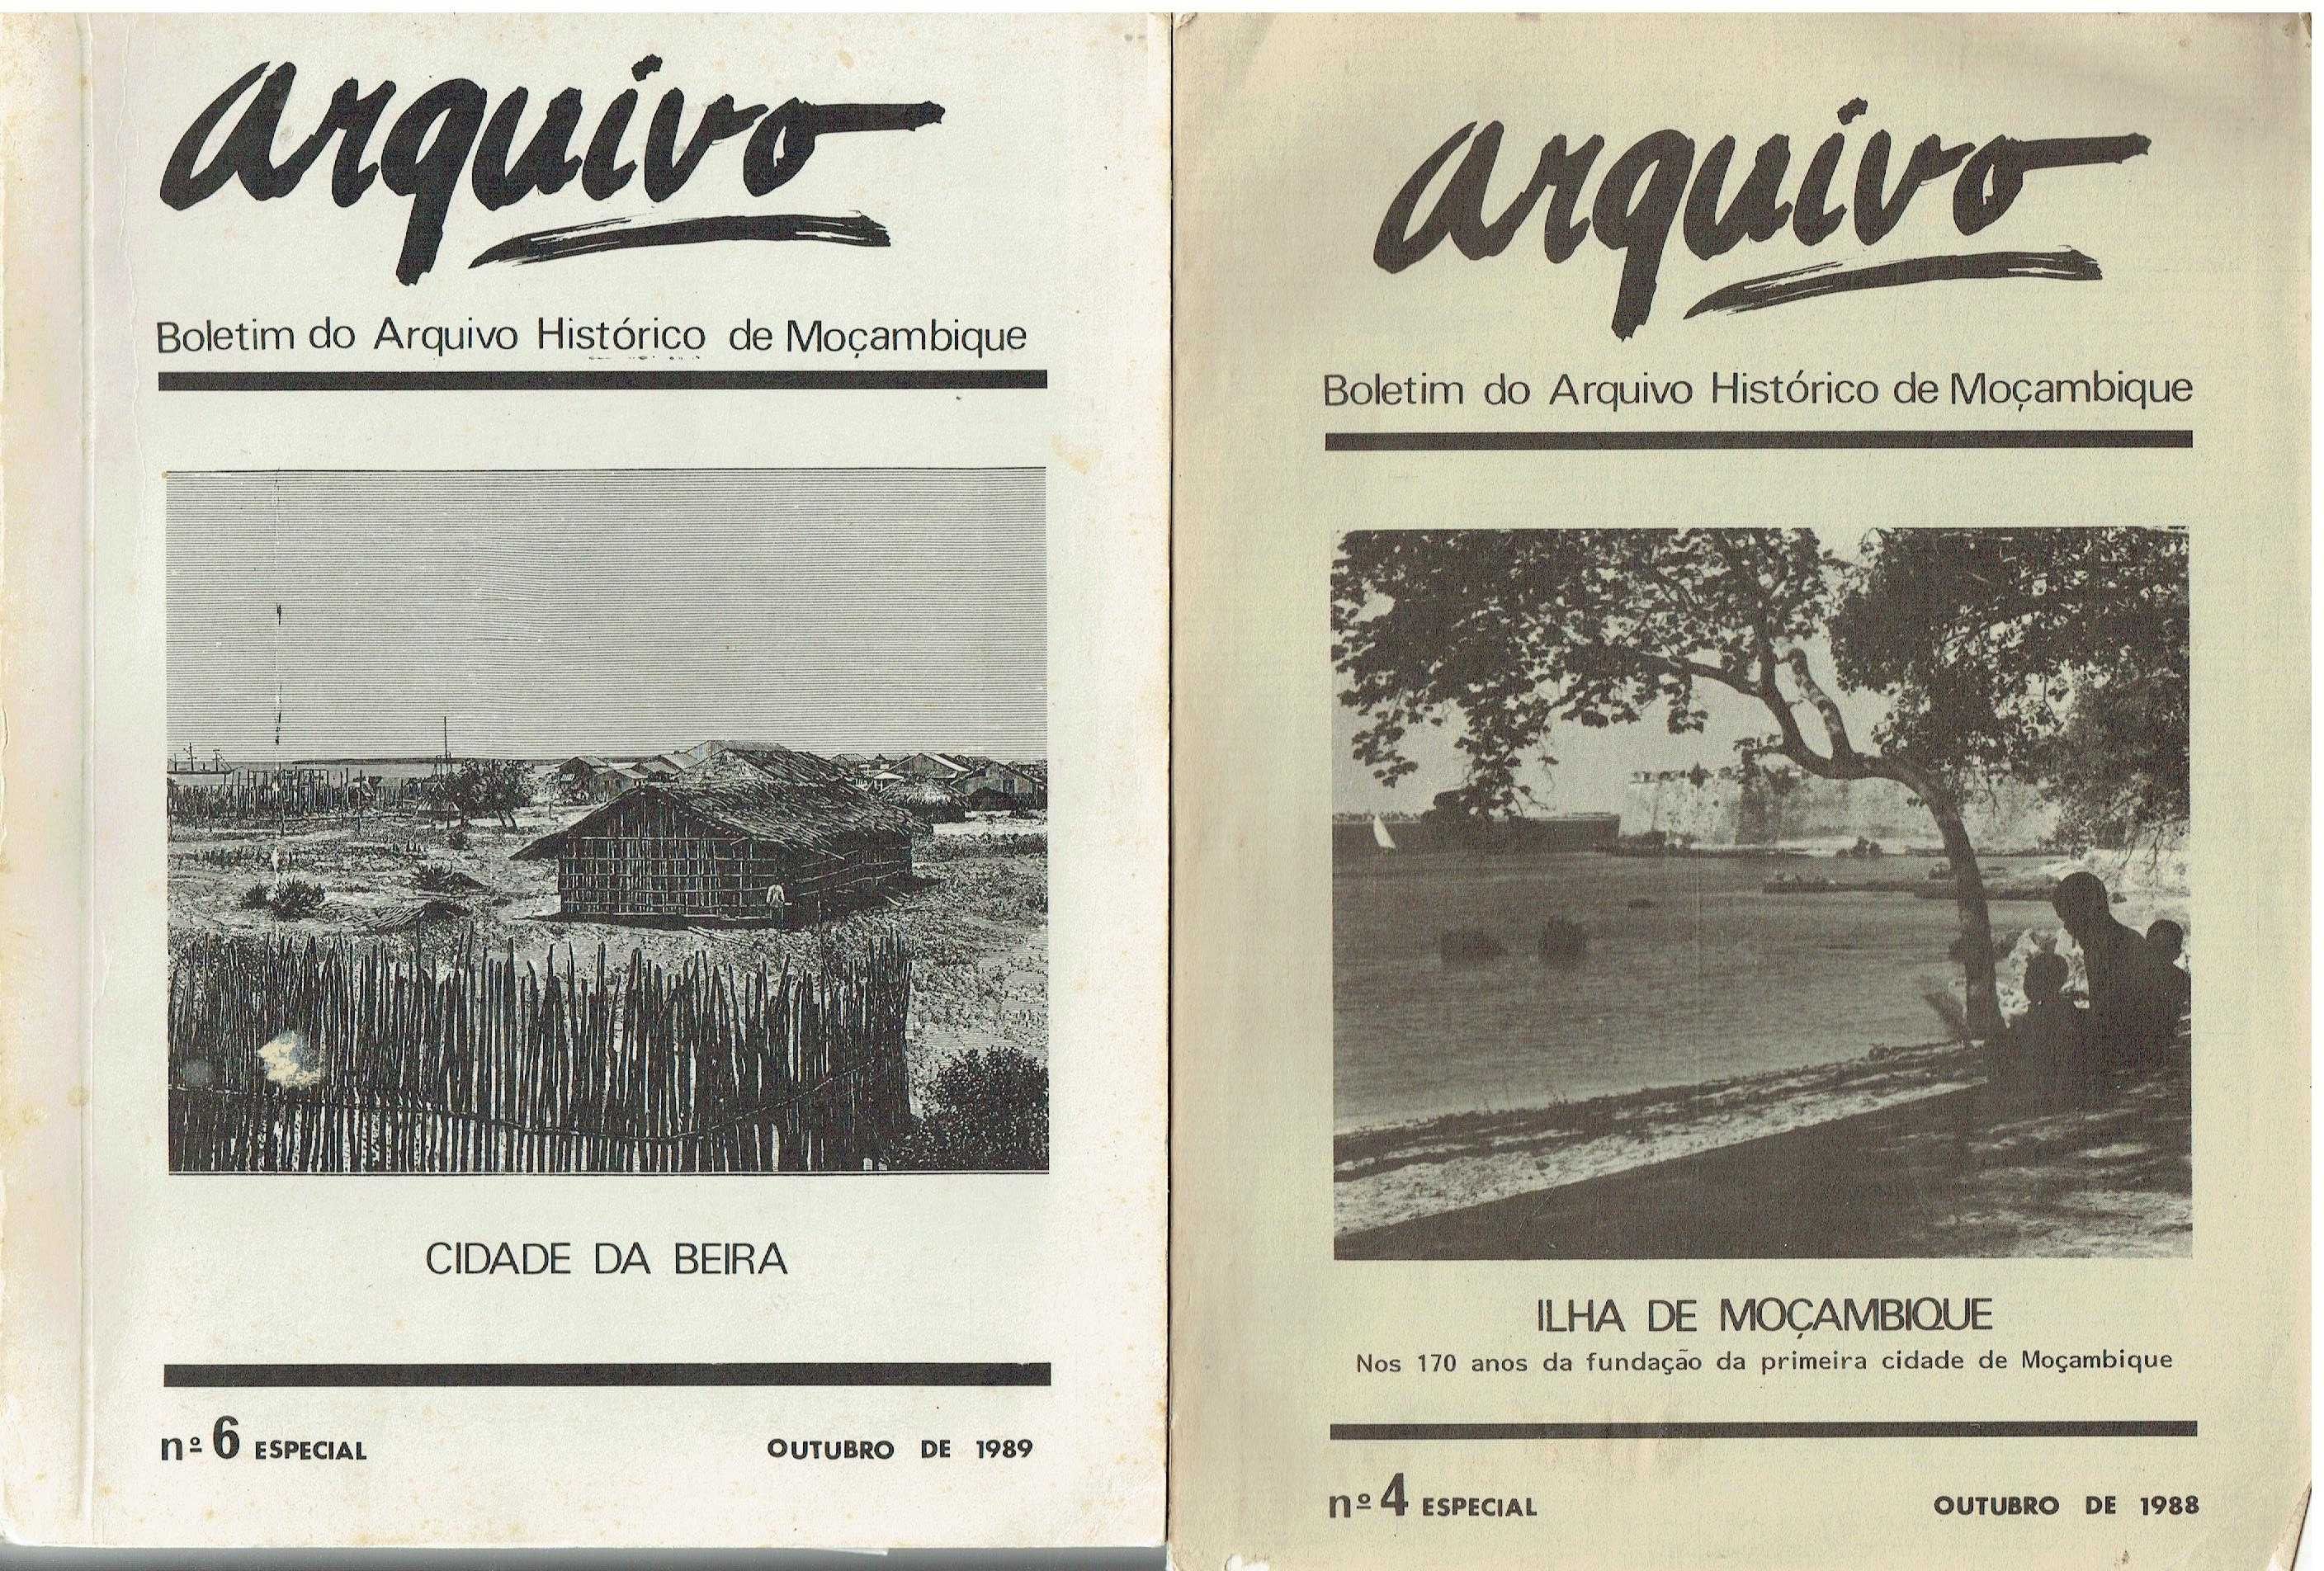 92

Arquivo 
Boletim do Arquivo Histórico de Moçambique